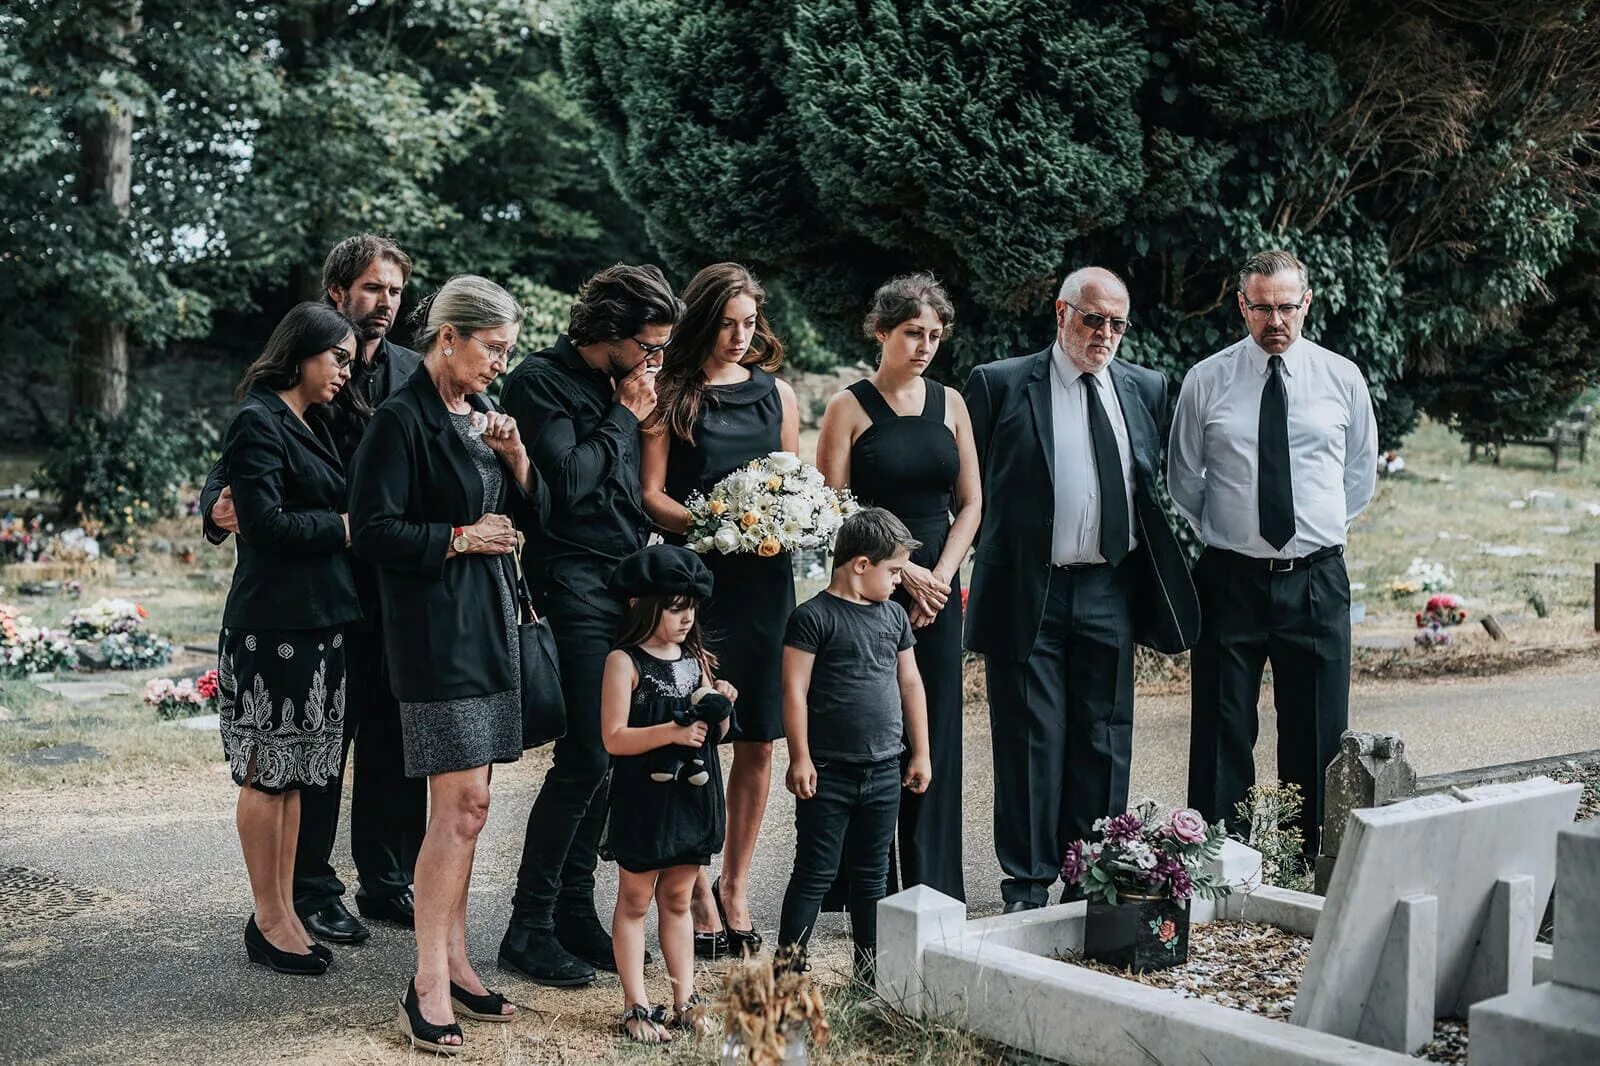 Похороны родственника. Семья на кладбище. Фото семей на кладбищах. Семья с детьми пришла на кладбище. Смеётся на похоронах женщина.